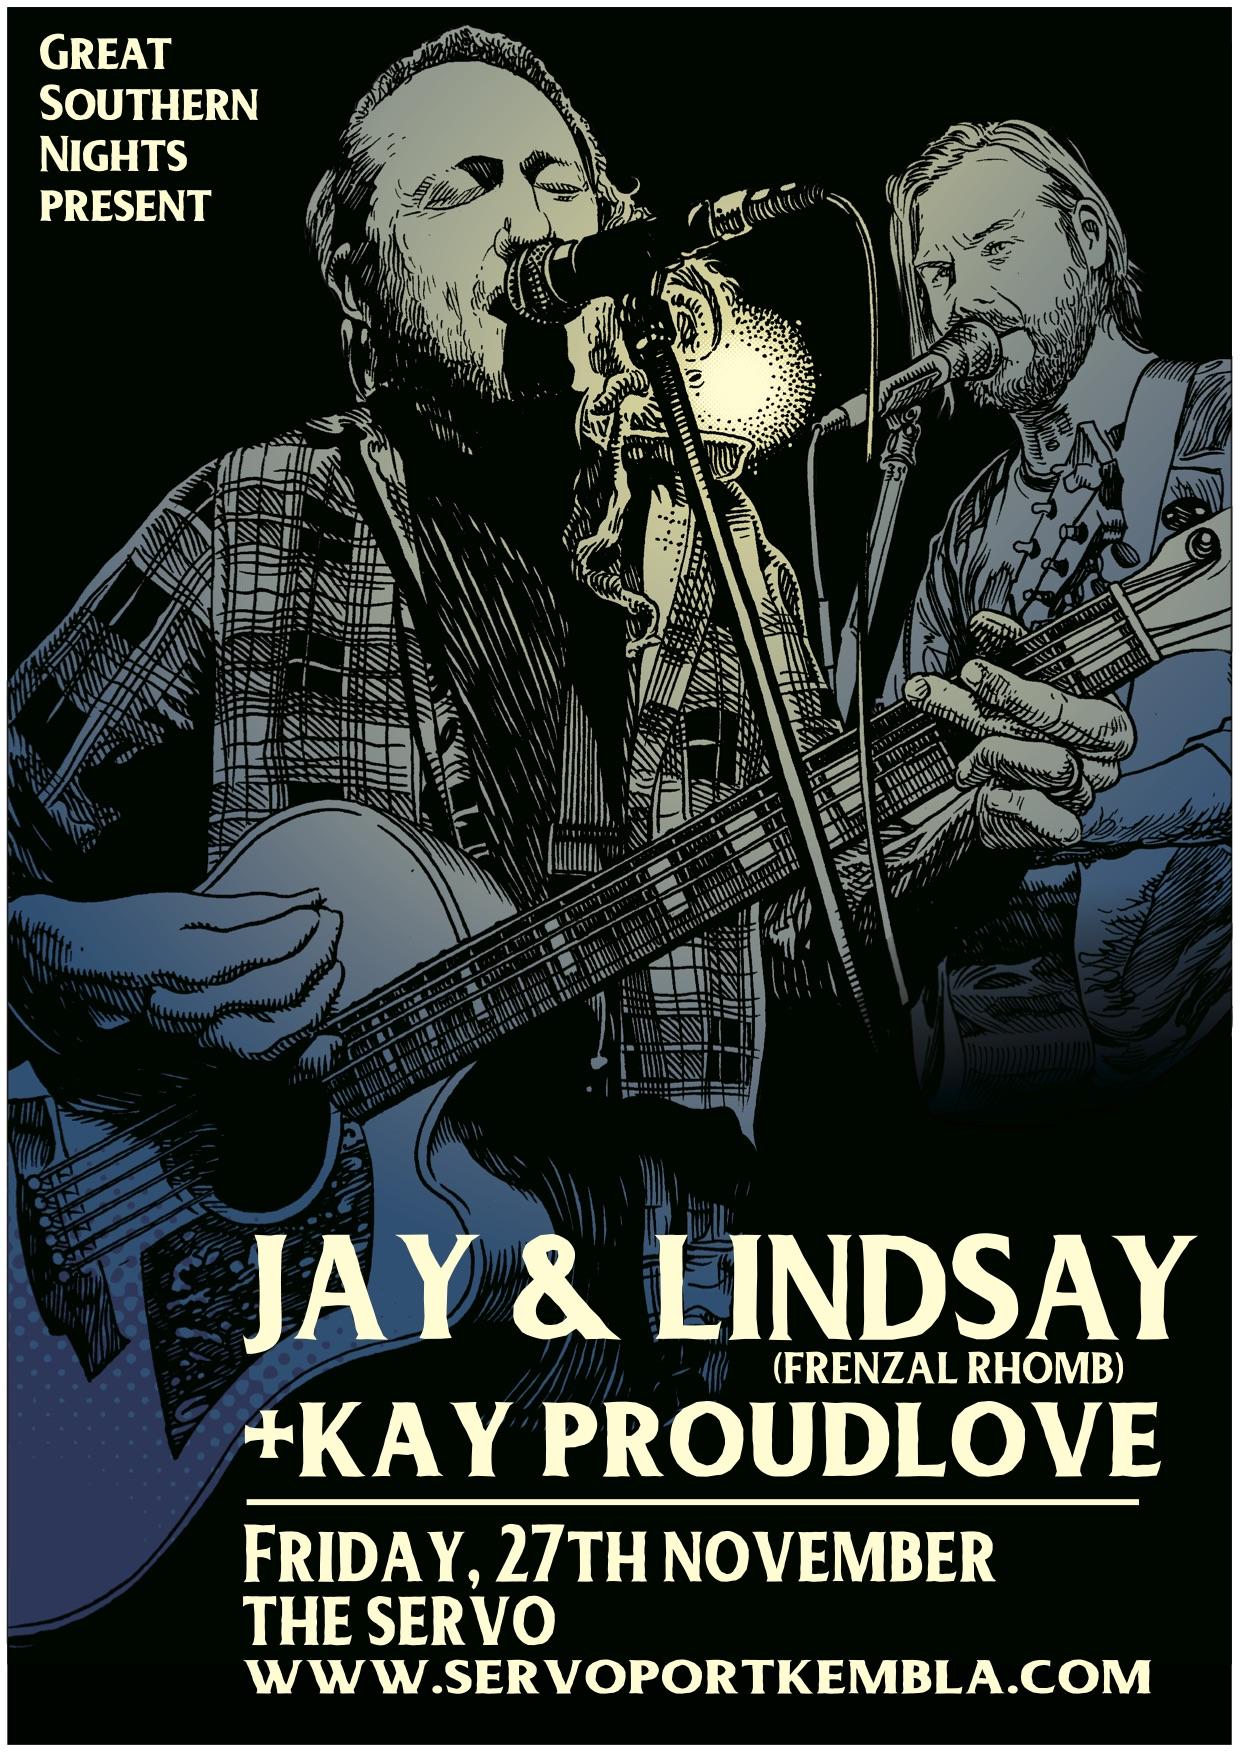 Jay & Lindsay (Frenzal Rhomb) + Kay Proudlove